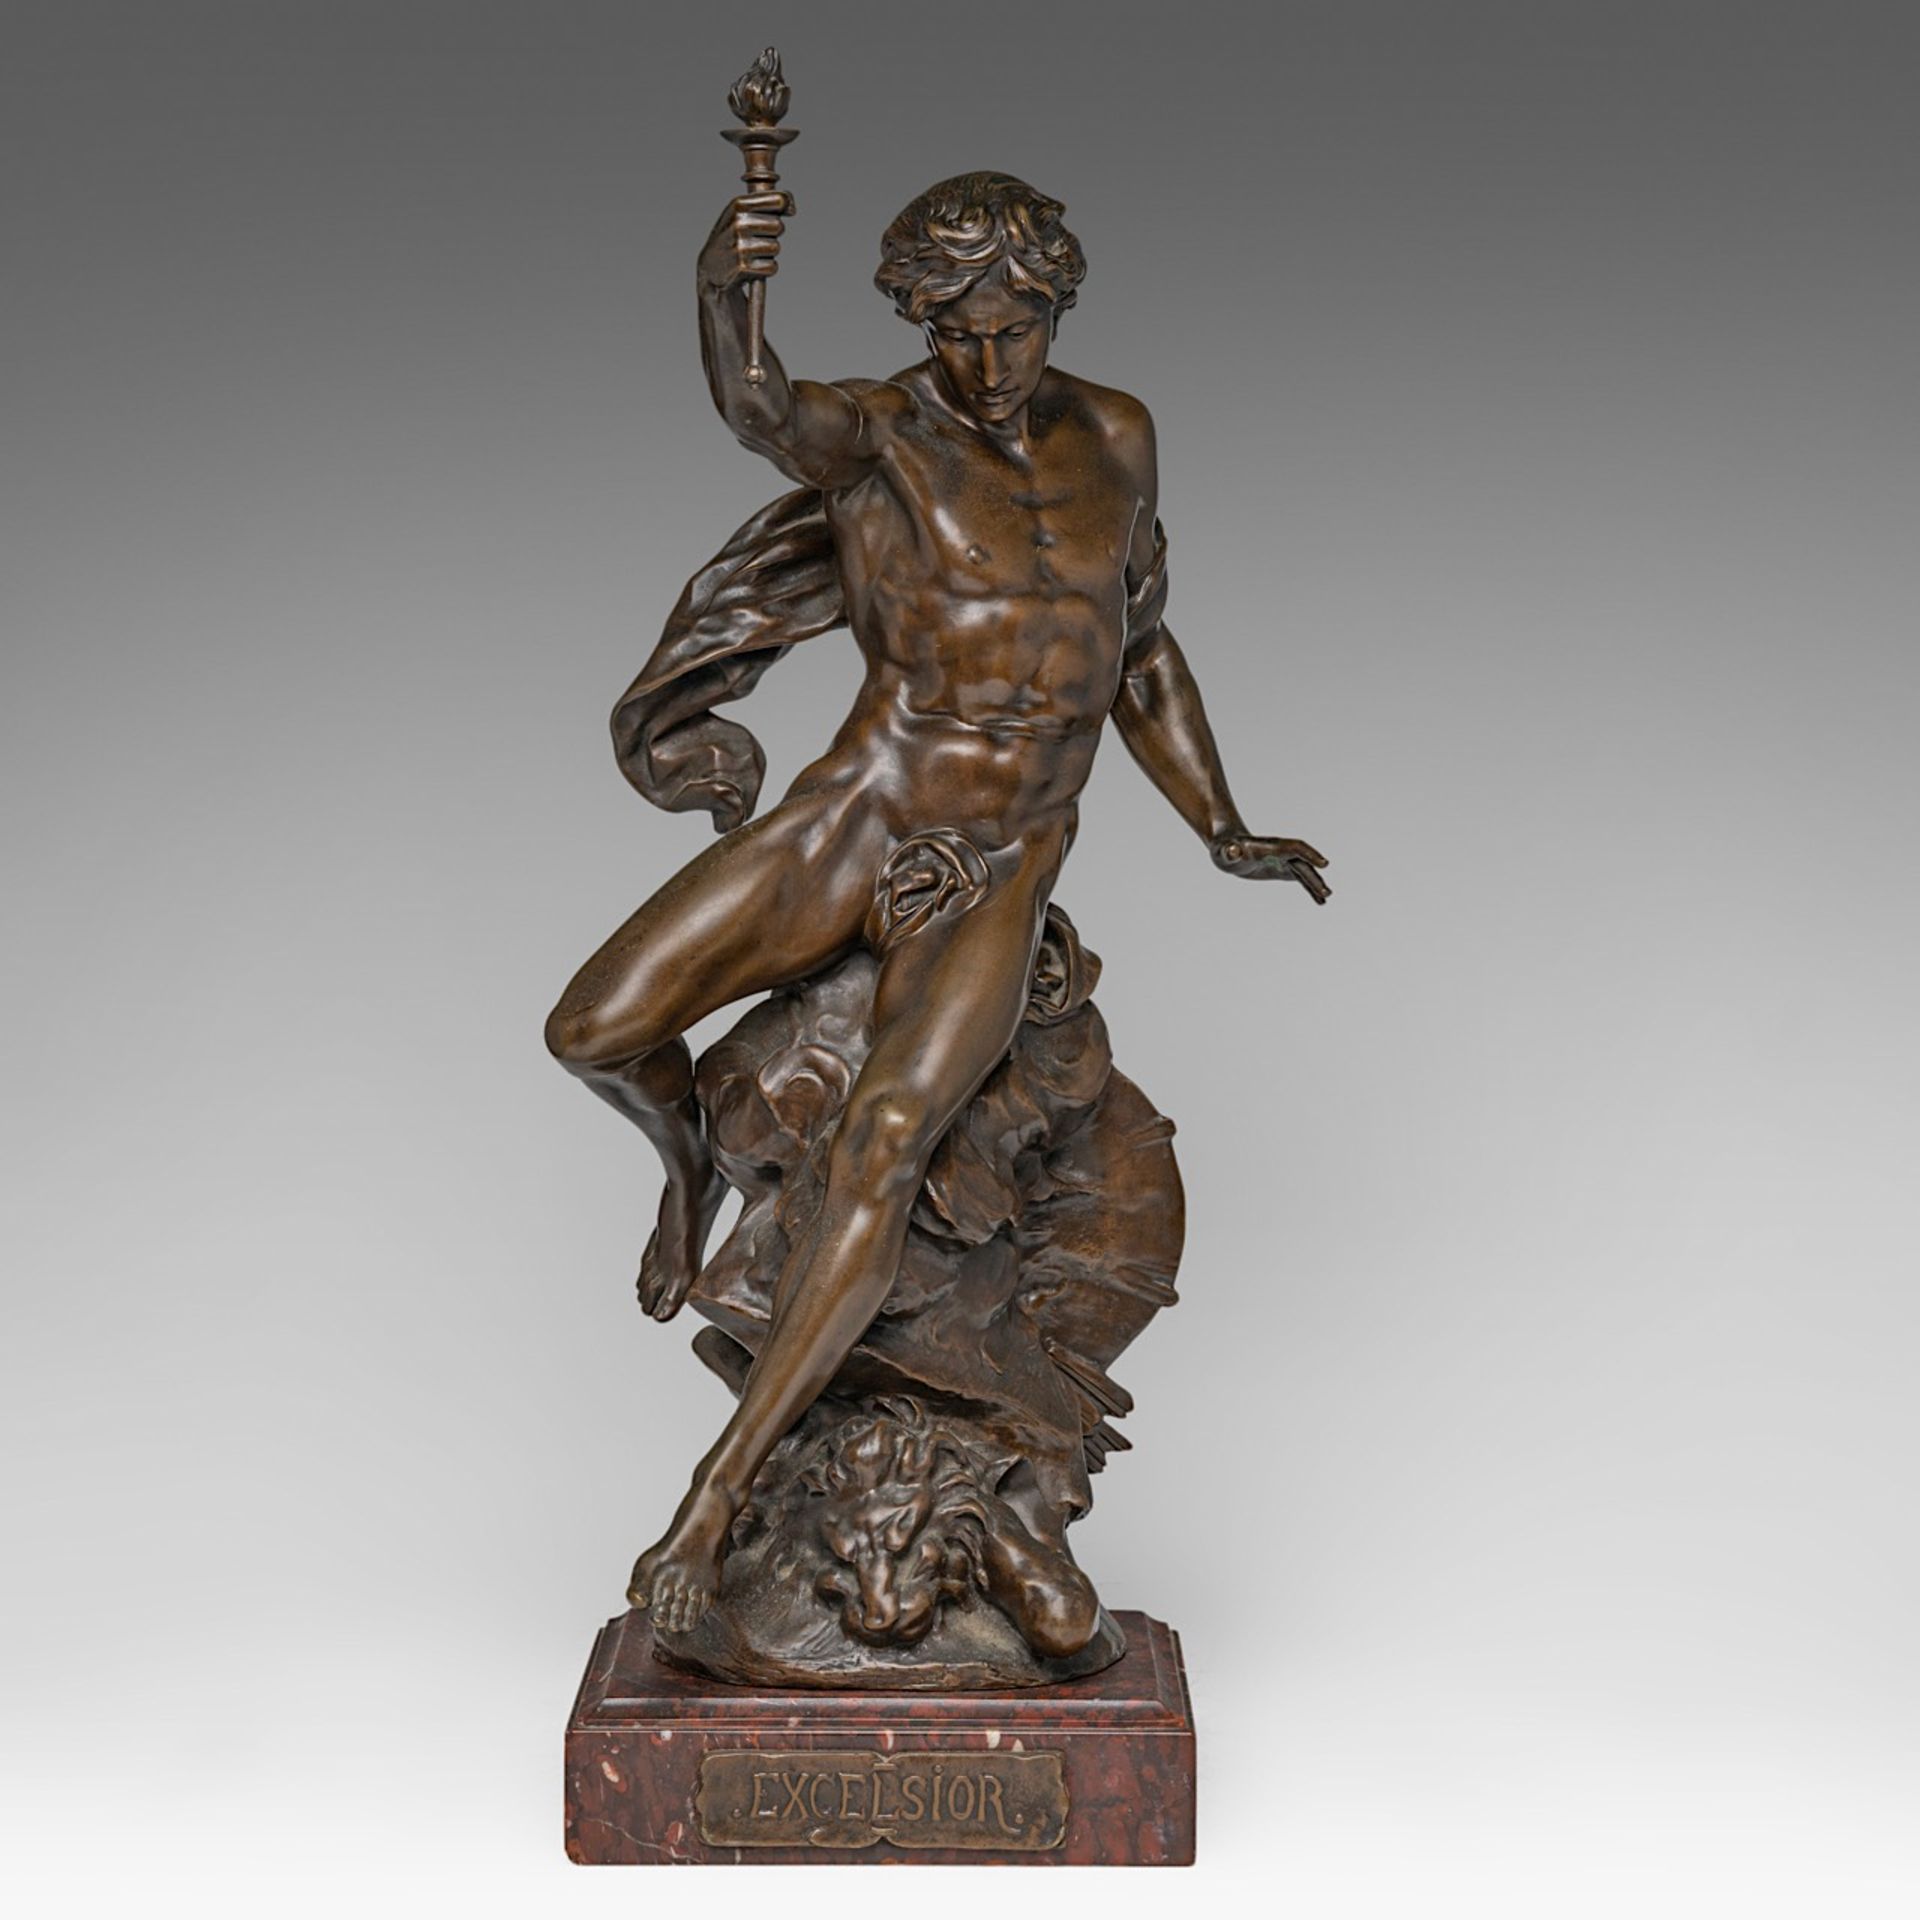 Emile Louis Picault (1833-1915), 'Excelsior', patinated bronze, H 61 cm